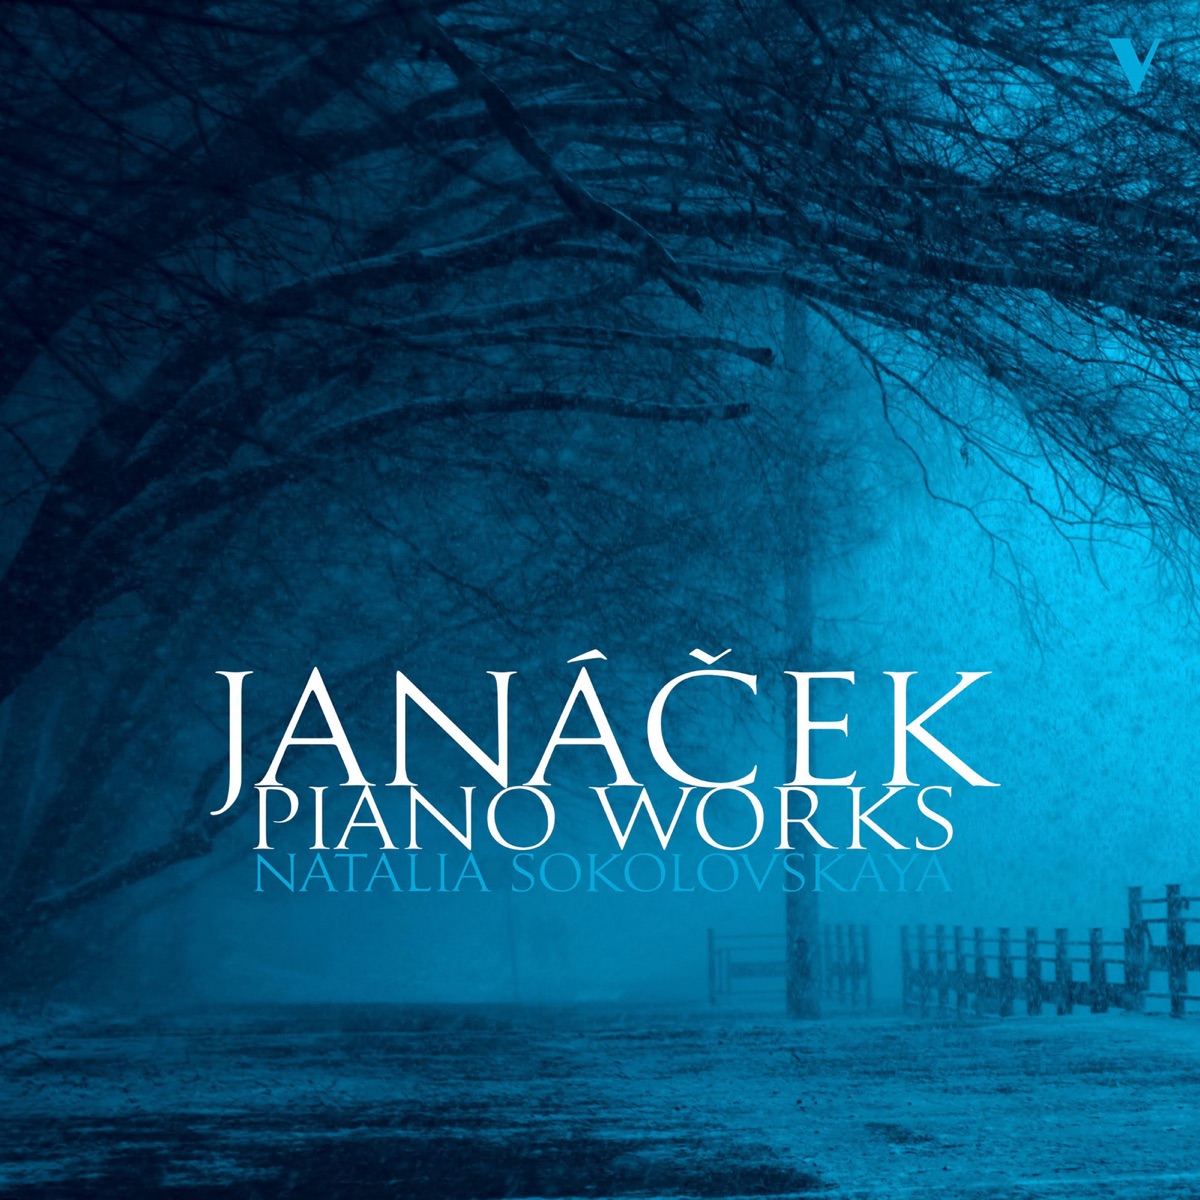 Janáček: Piano Works by Natalia Sokolovskaya on Apple Music